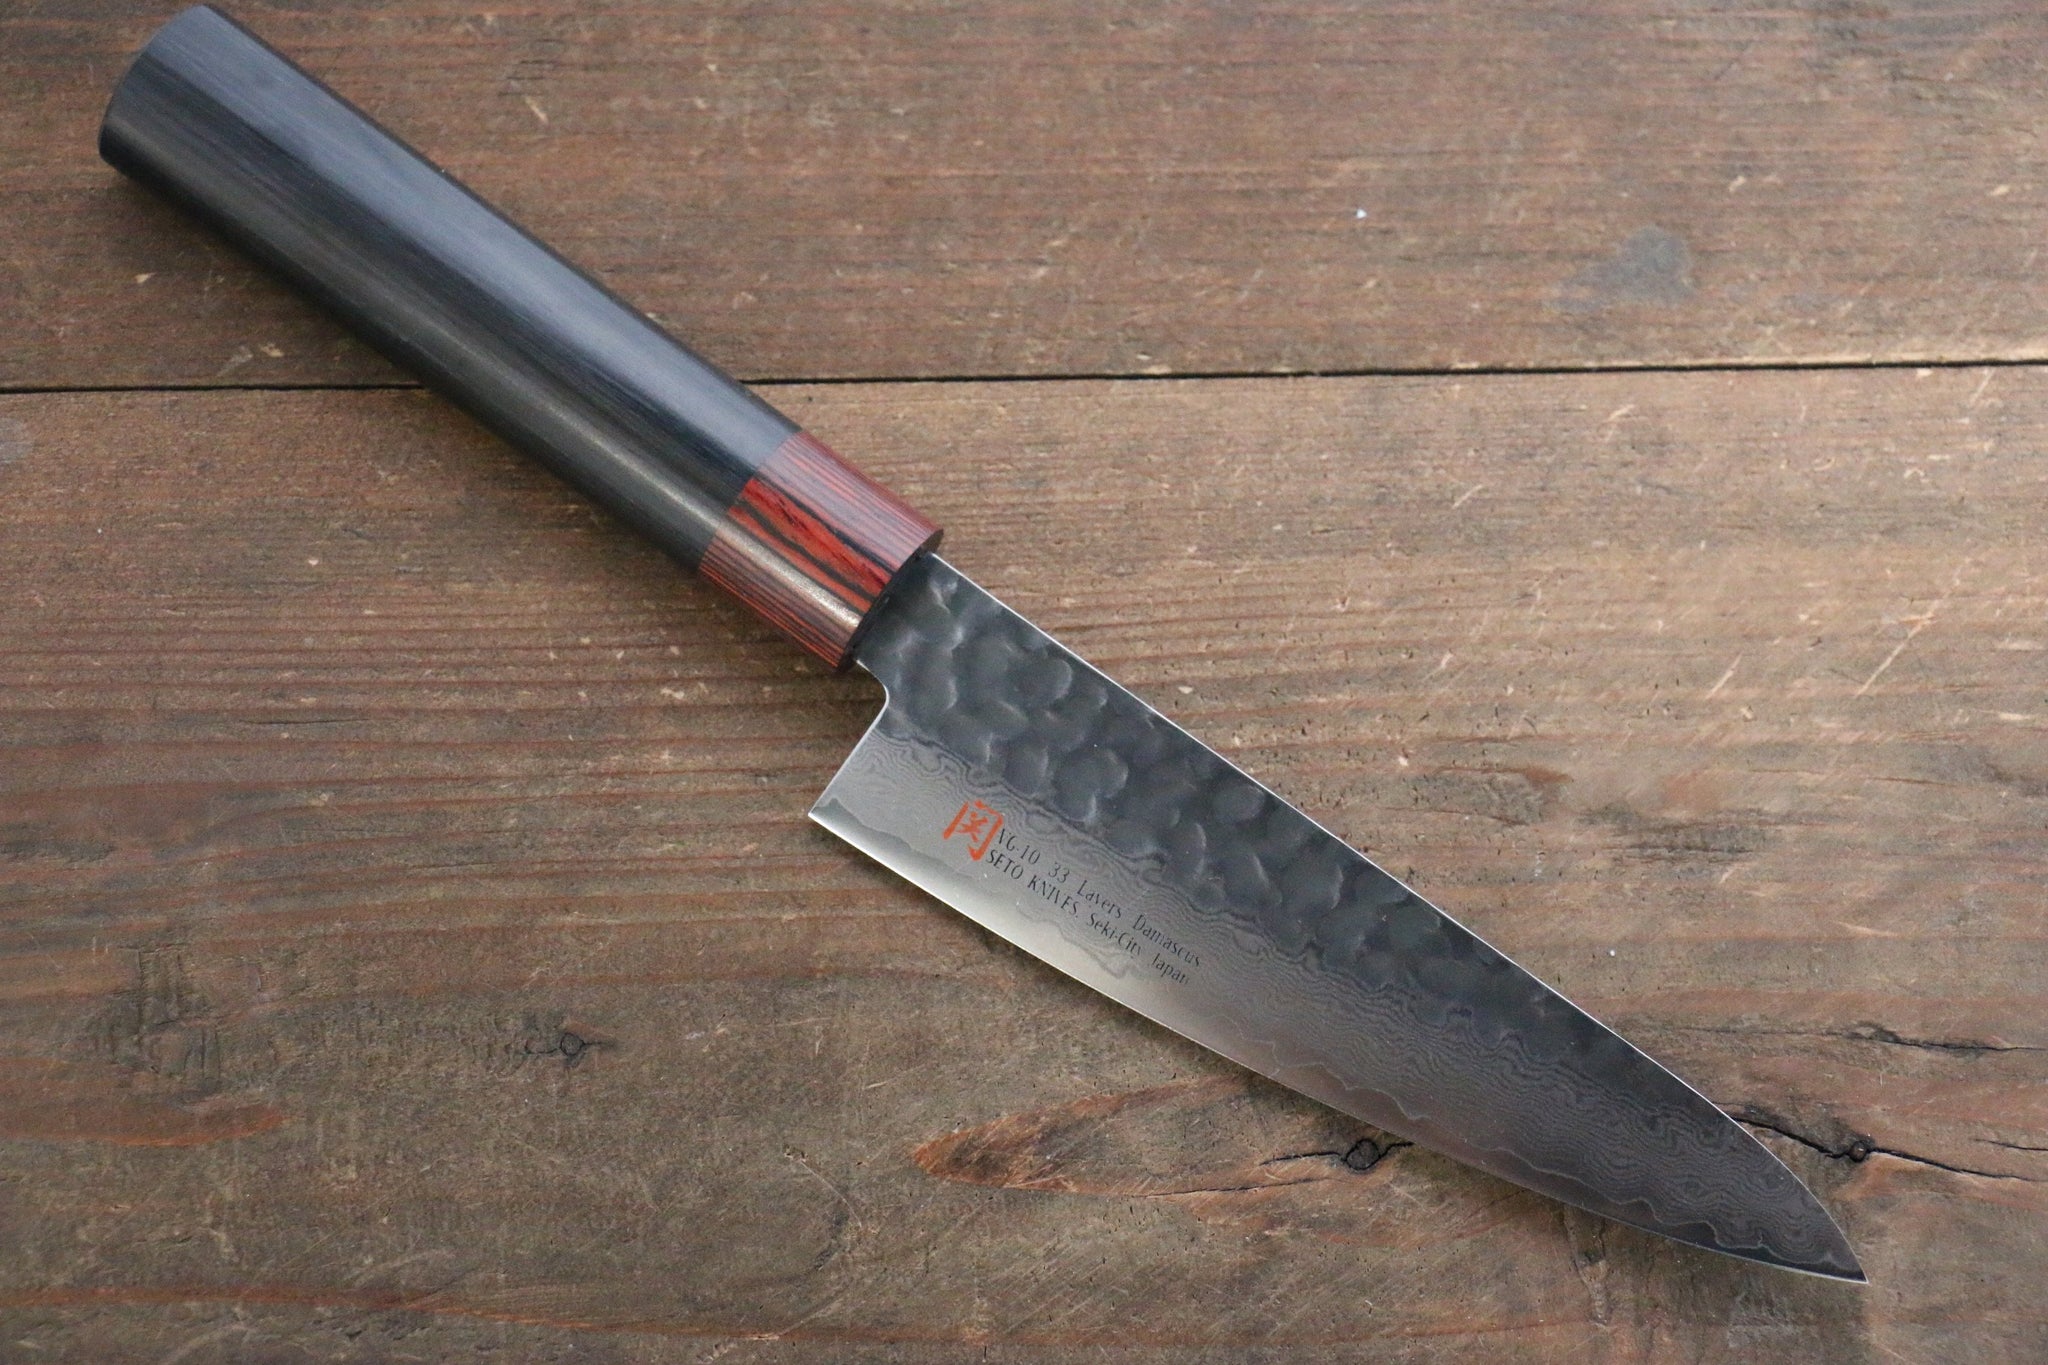 Comprar cuchillos japoneses: nuestra guía sencilla